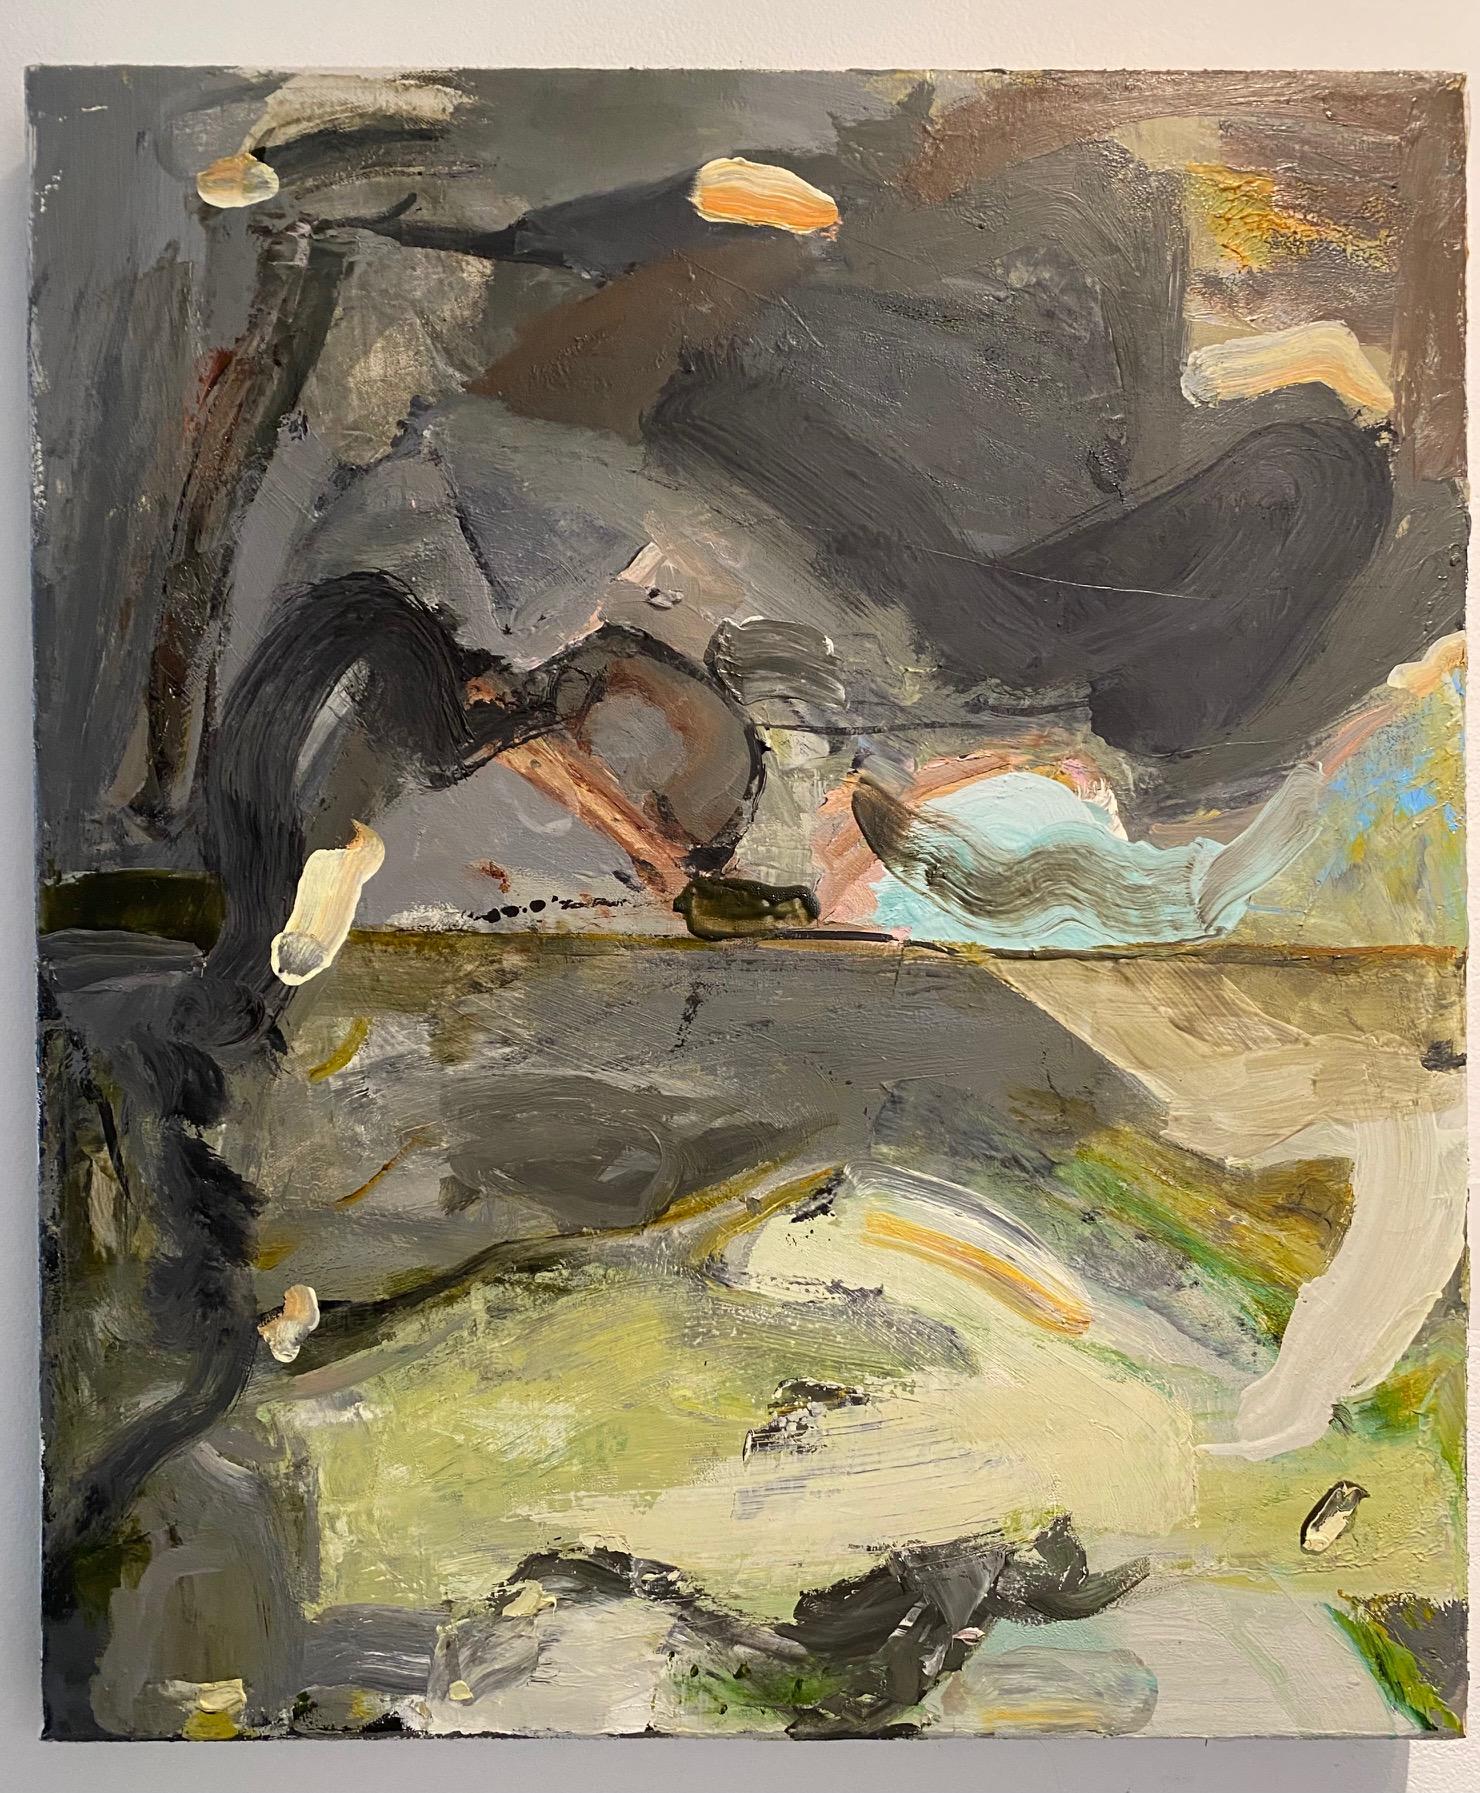 « Main Landscape - Storm II », huile sur toile - peinture abstraite - Painting de Alfredo Gisholt